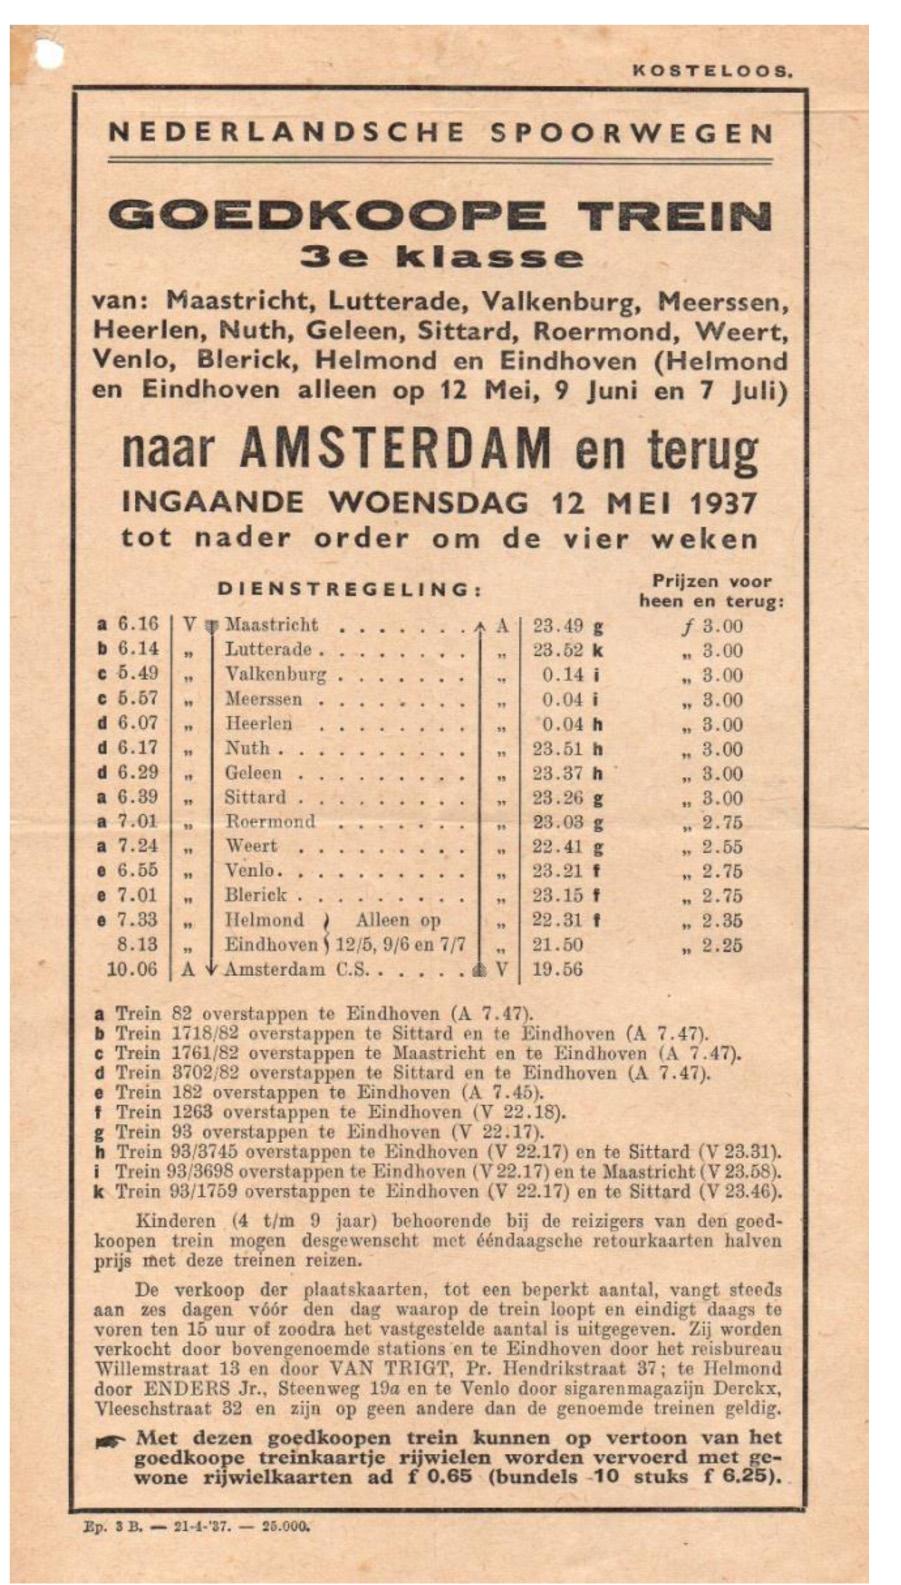 NS folder ( kosteloos ) met de dienstregeling voor goedkoop reizen 3e klasse naar Amsterdam en terug ingaande 12 mei 1932 Situatie schets van het emplacement en